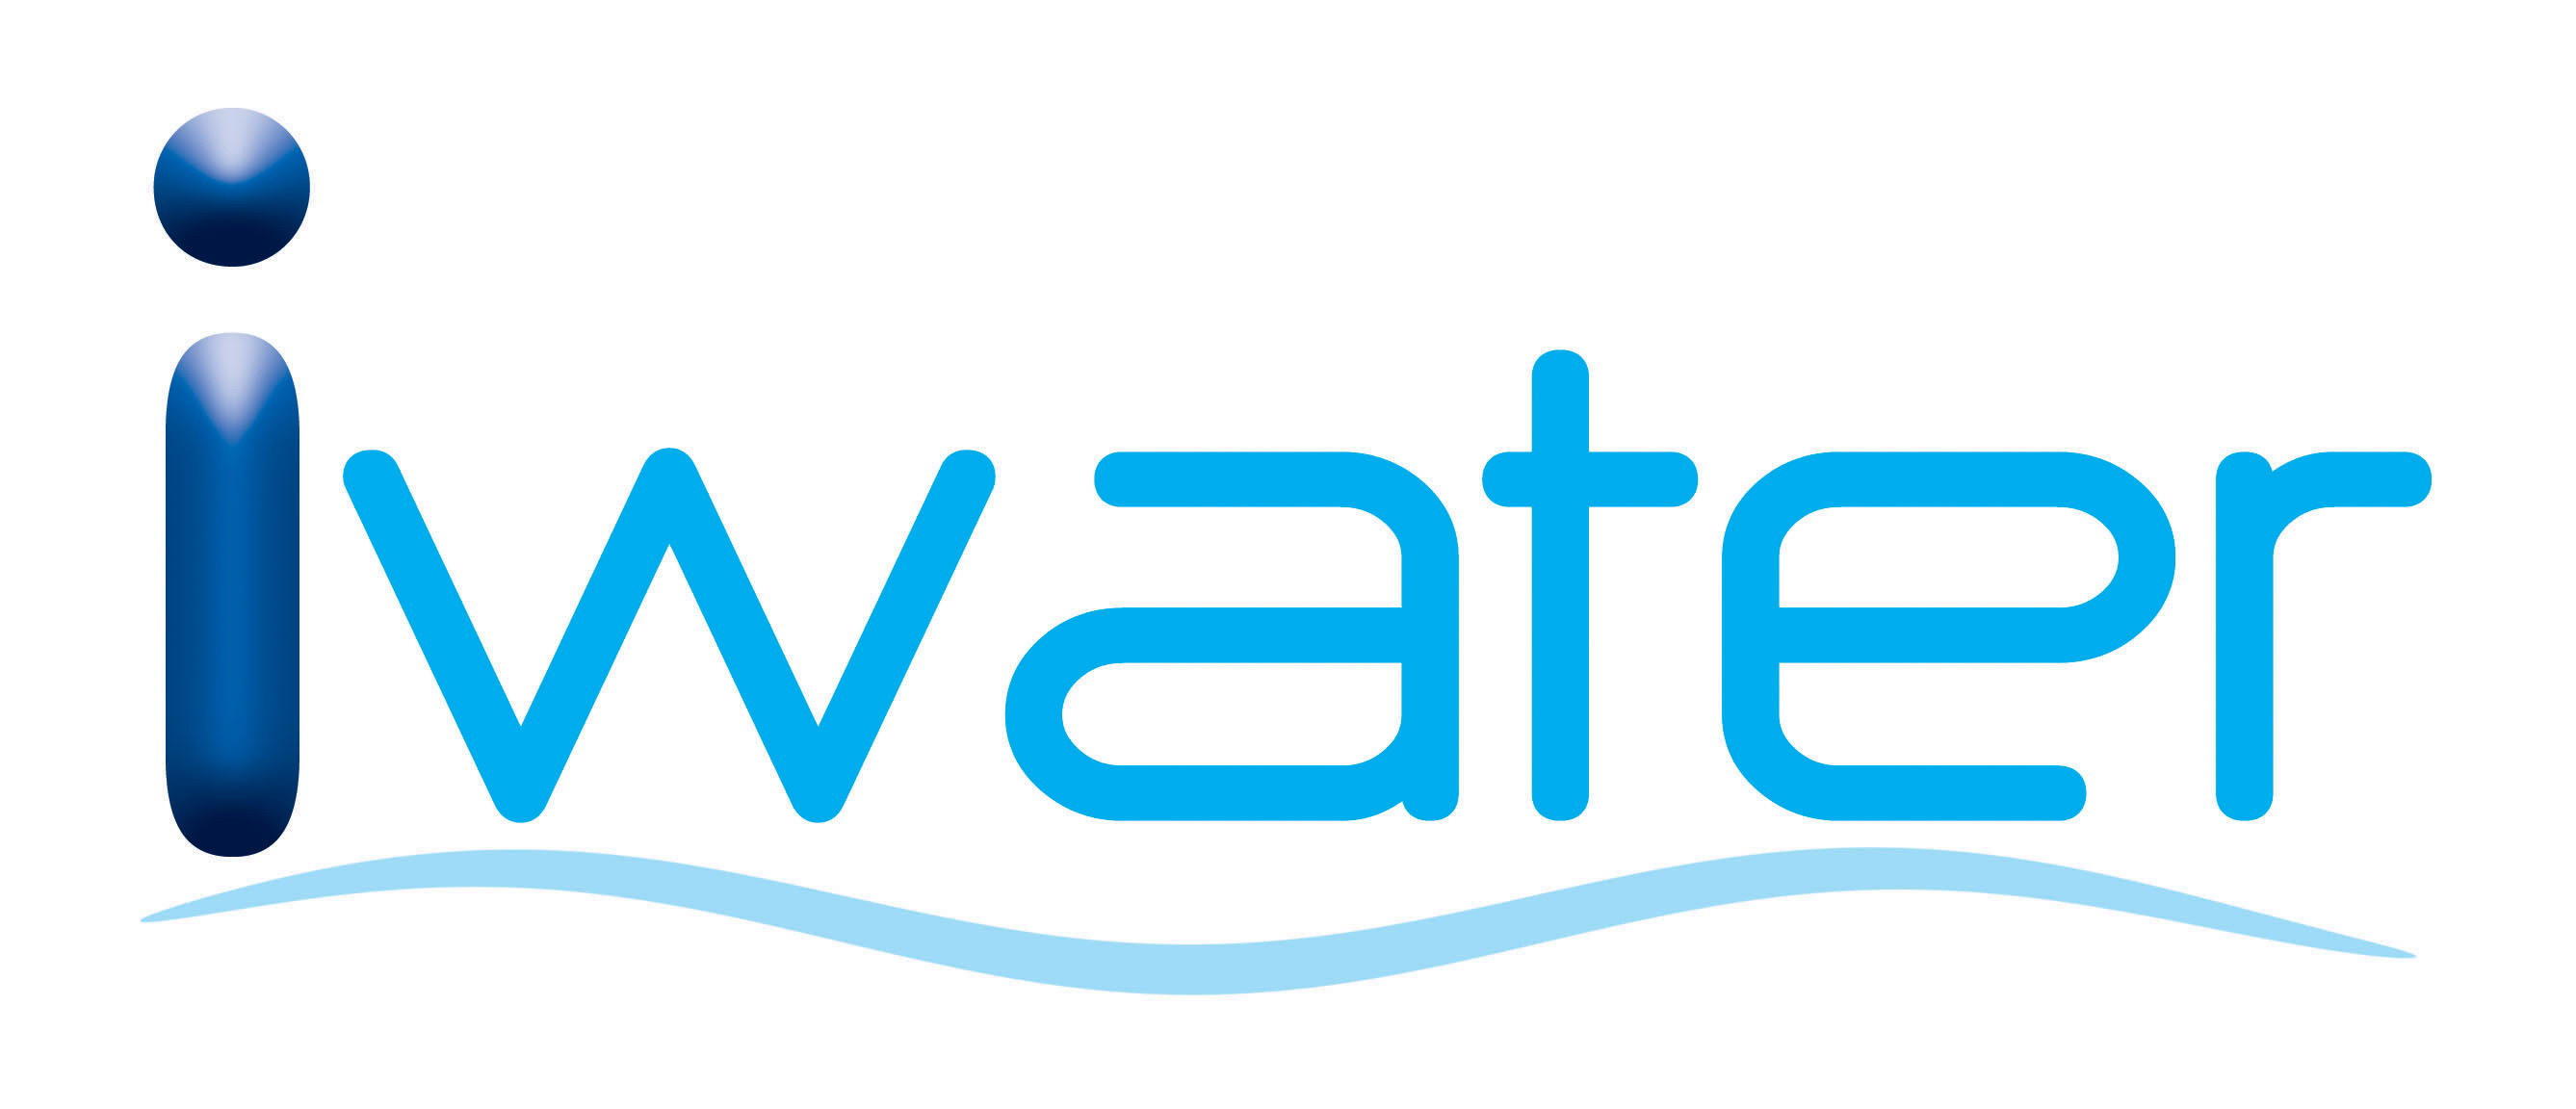 Inter Water Treatment Co,Ltd.